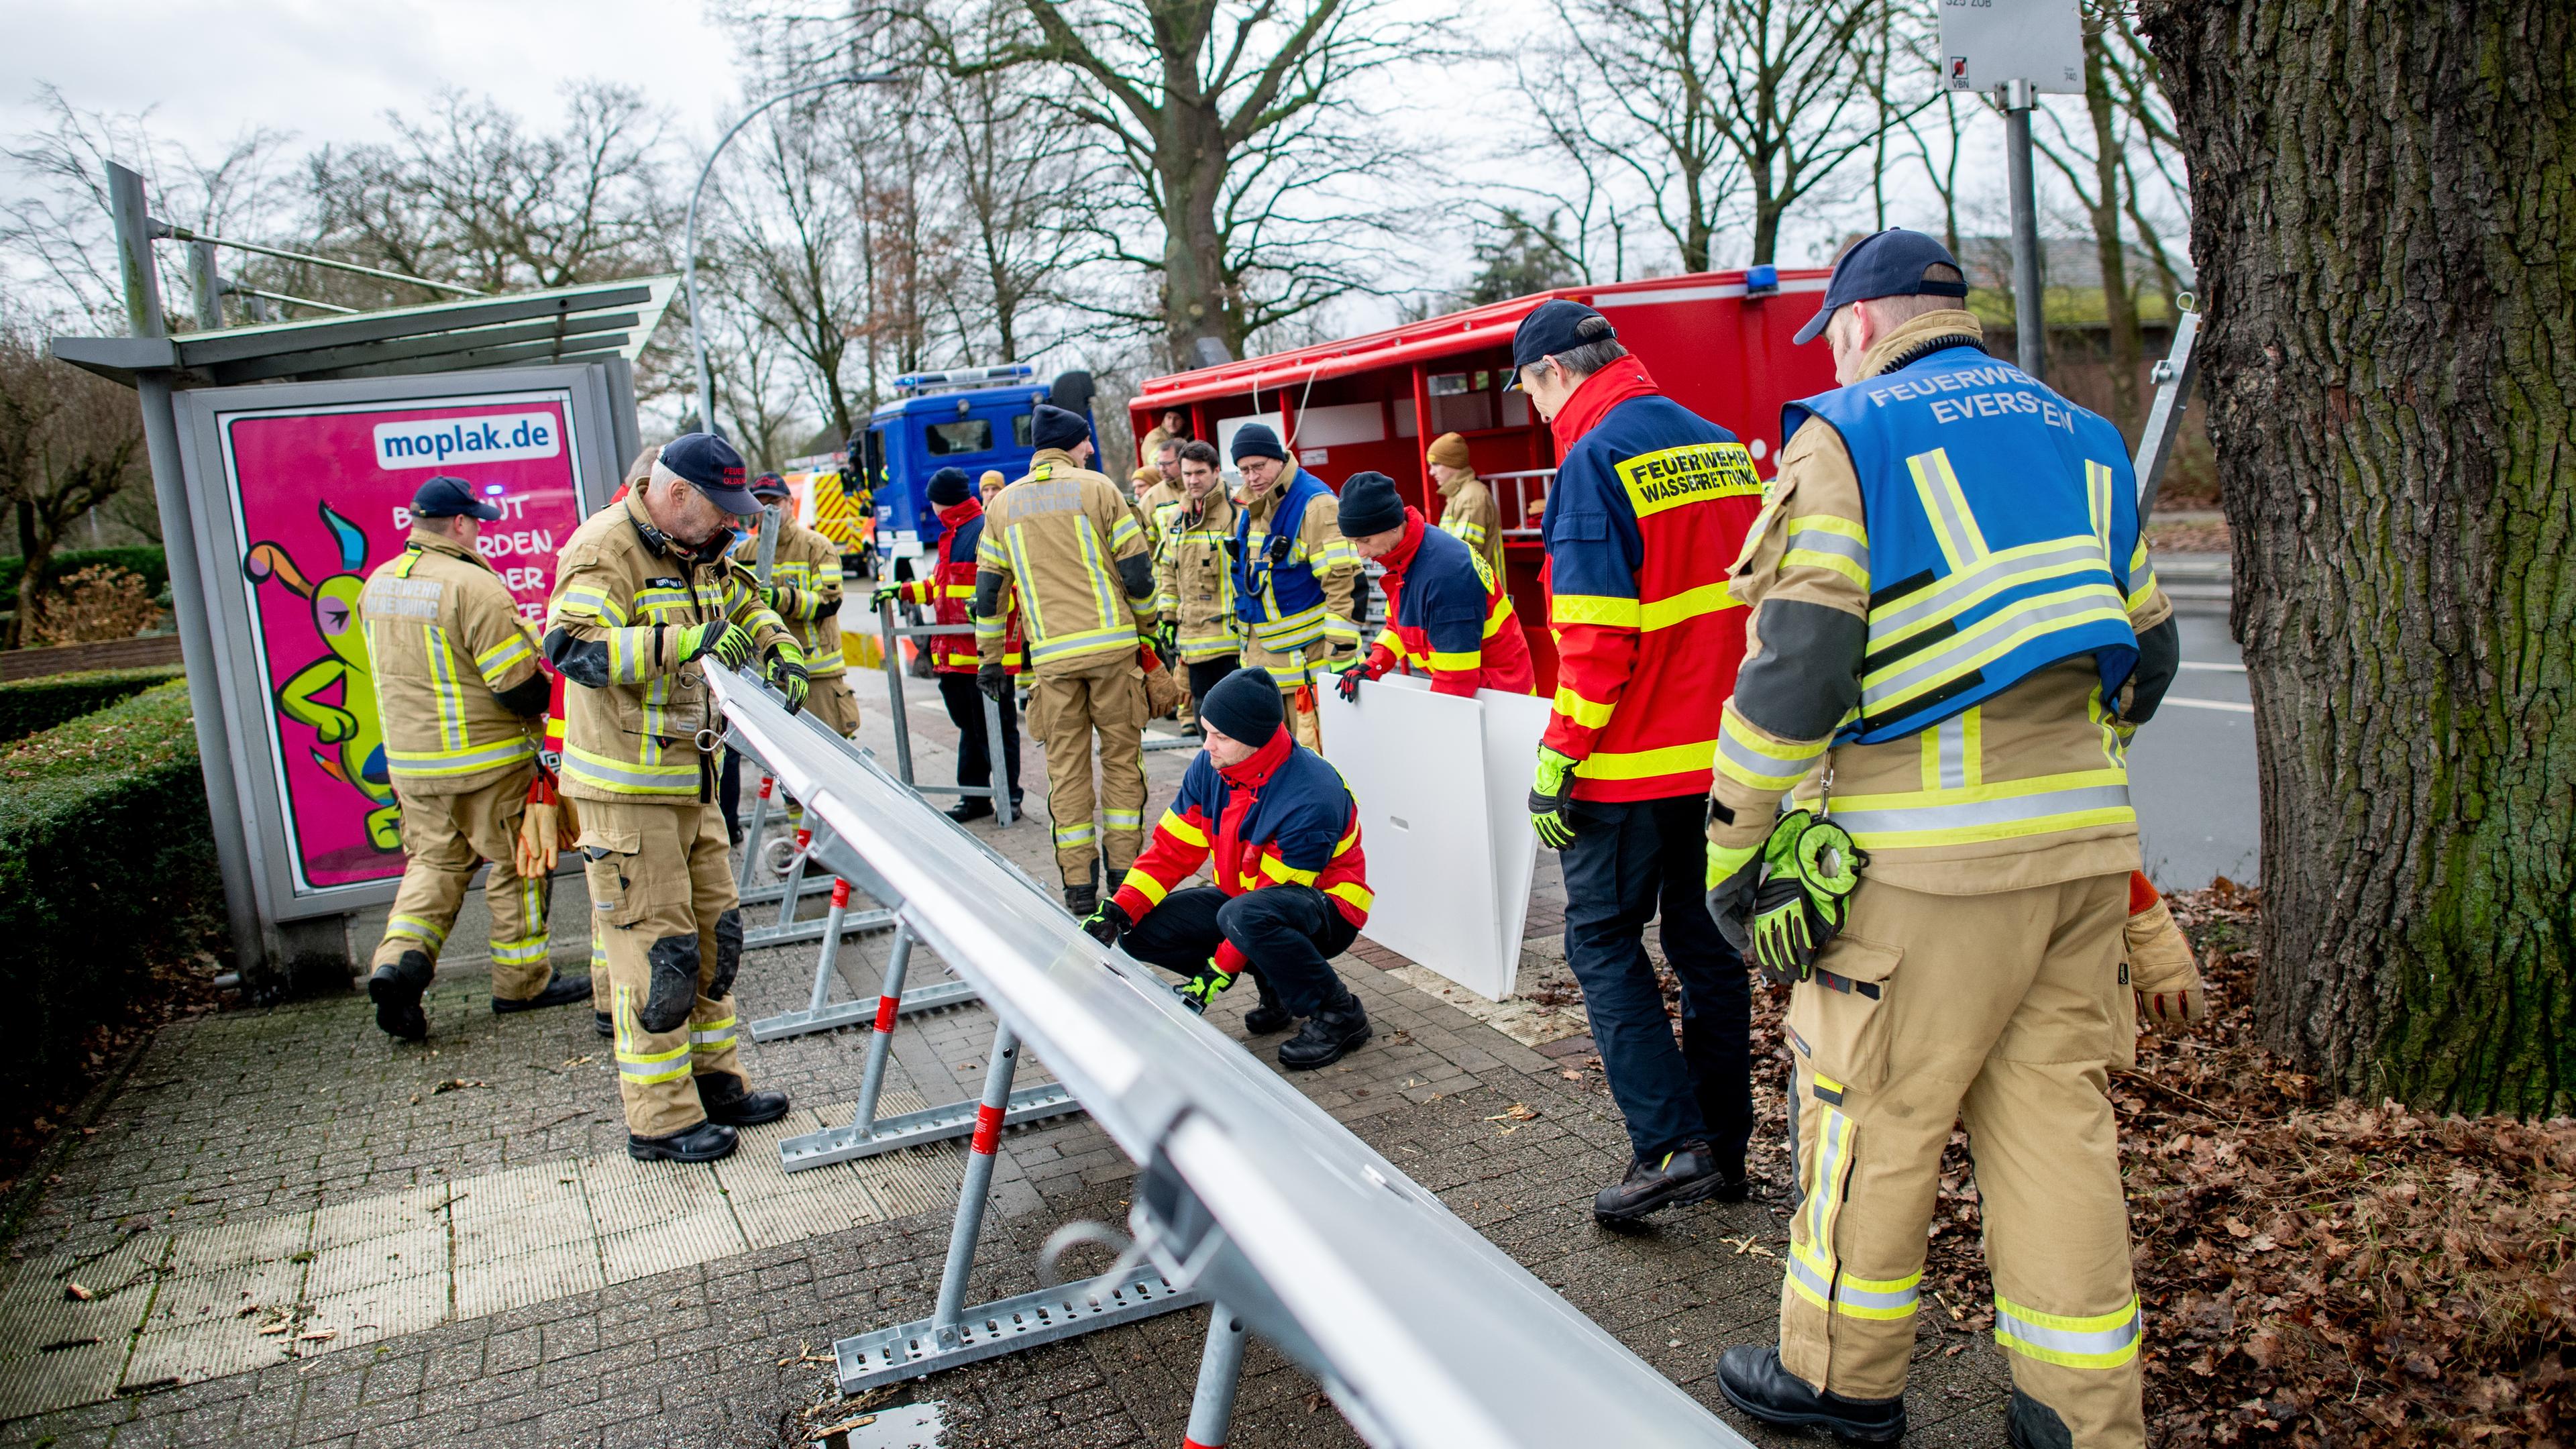 iedersachsen, Oldenburg: Einsatzkräfte der Feuerwehr stellen einen mobilen Deich im Stadtteil Bümmerstede auf.